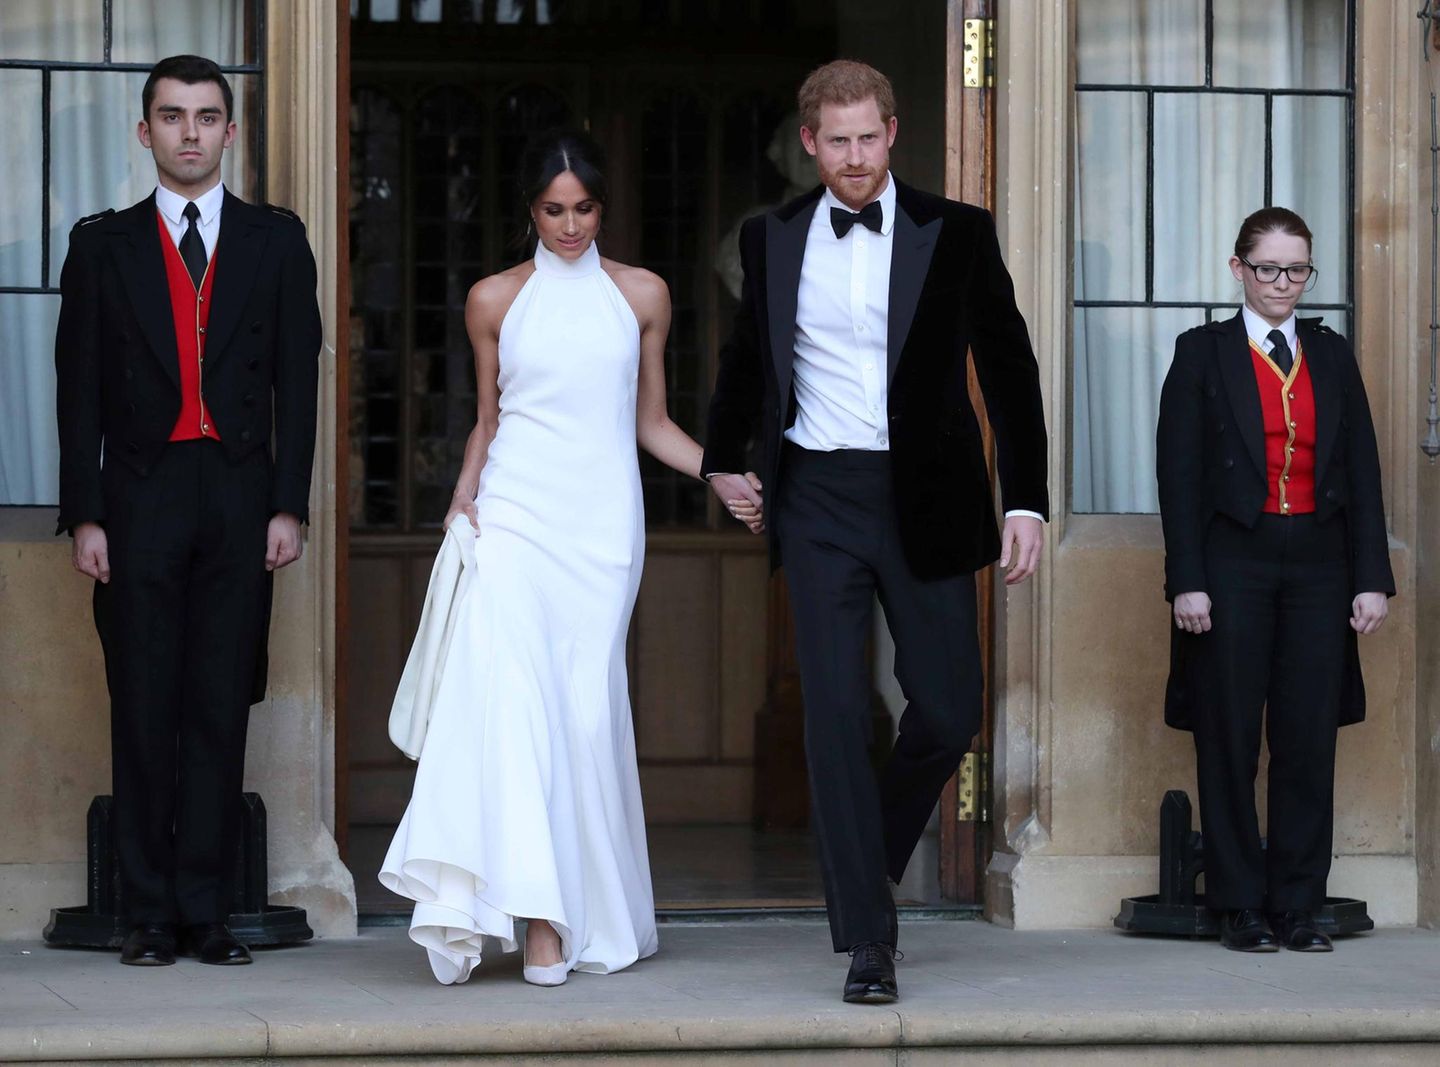 Hier kommt das frischgebackene Ehepaar, Prinz Harry und Herzogin Meghan, im abendlichen Outfit.